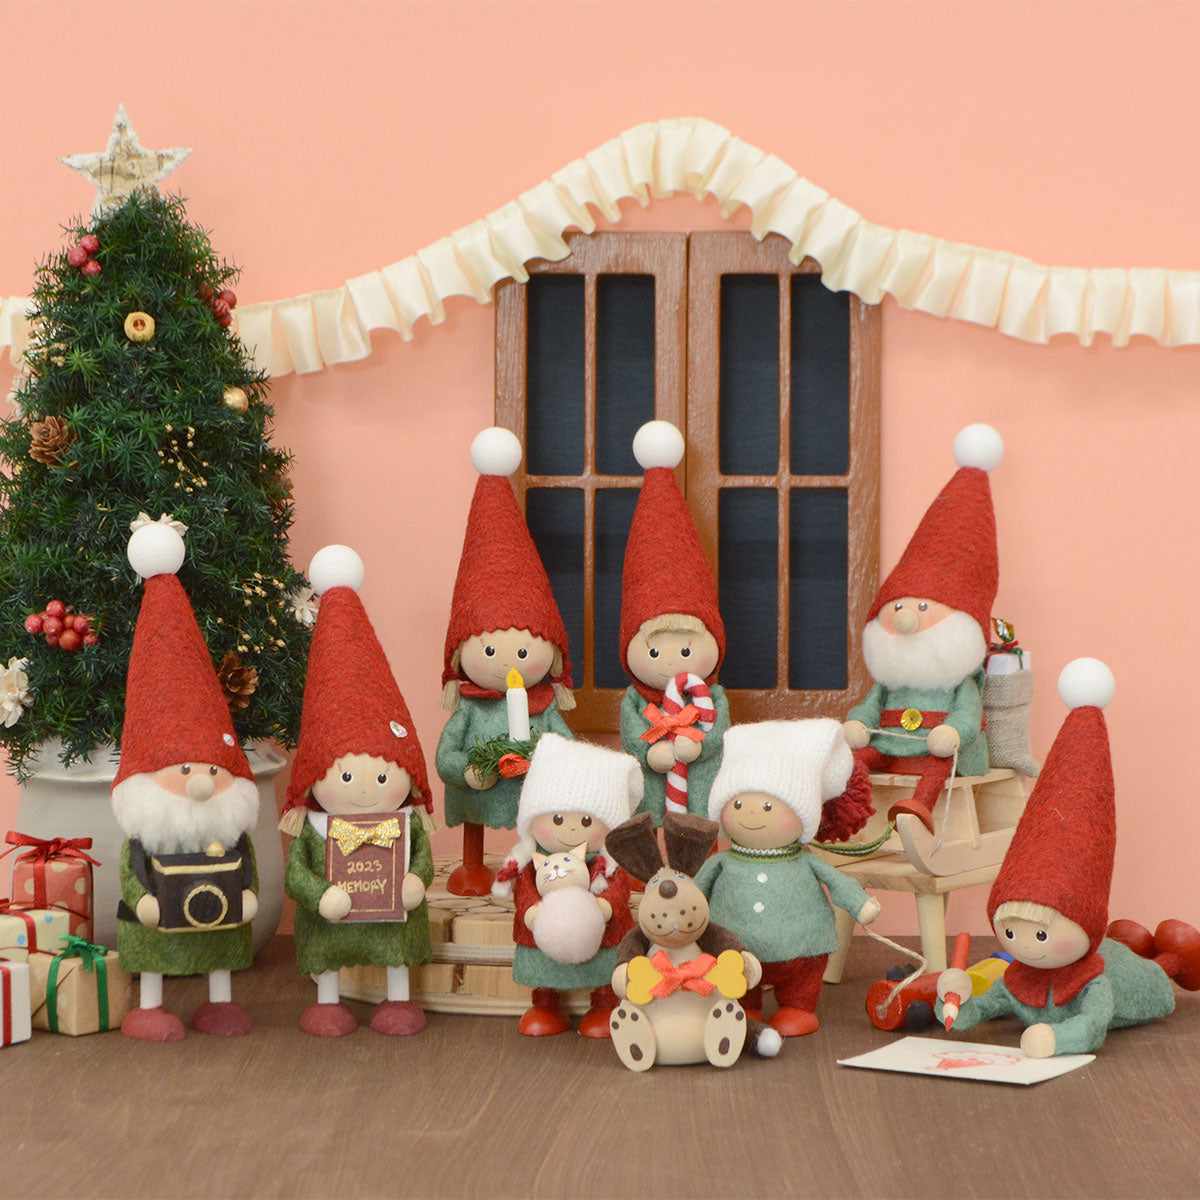 【2023新作】NORDIKA nisse ノルディカ ニッセ クリスマス 木製人形 ( ネコのぬいぐるみを抱えた女の子 / Joy to the world )